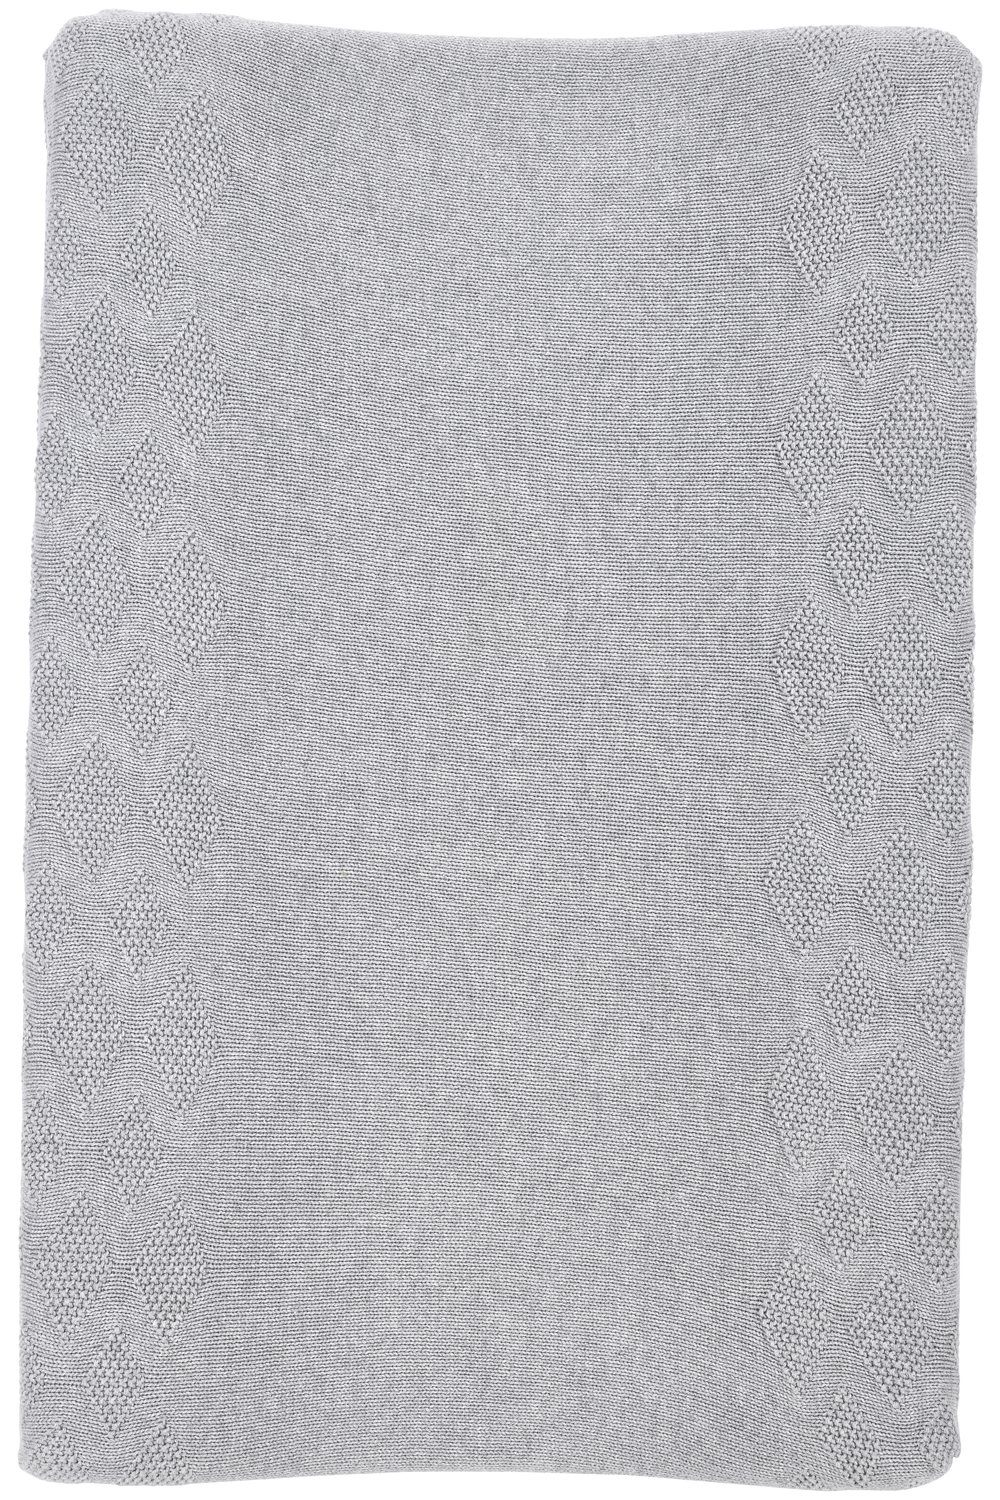 Wickelauflagenbezug organisch Diamond - grey melange - 50x70cm